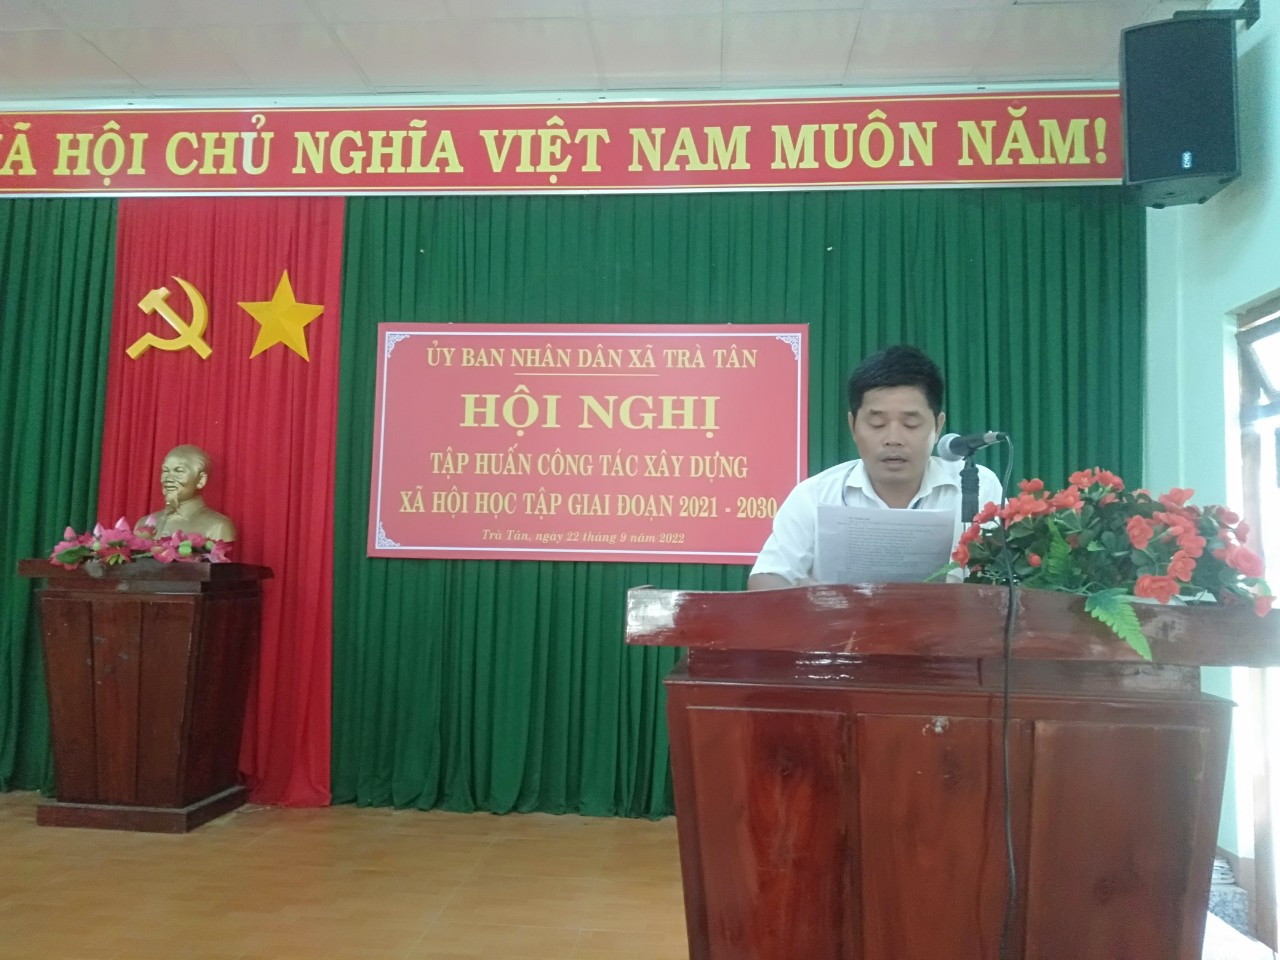 Ủy ban nhân dân xã Trà Tân tổ chức Hội nghị tập huấn công tác xây dựng xã hội học tập giai đoạn 2021 – 2030